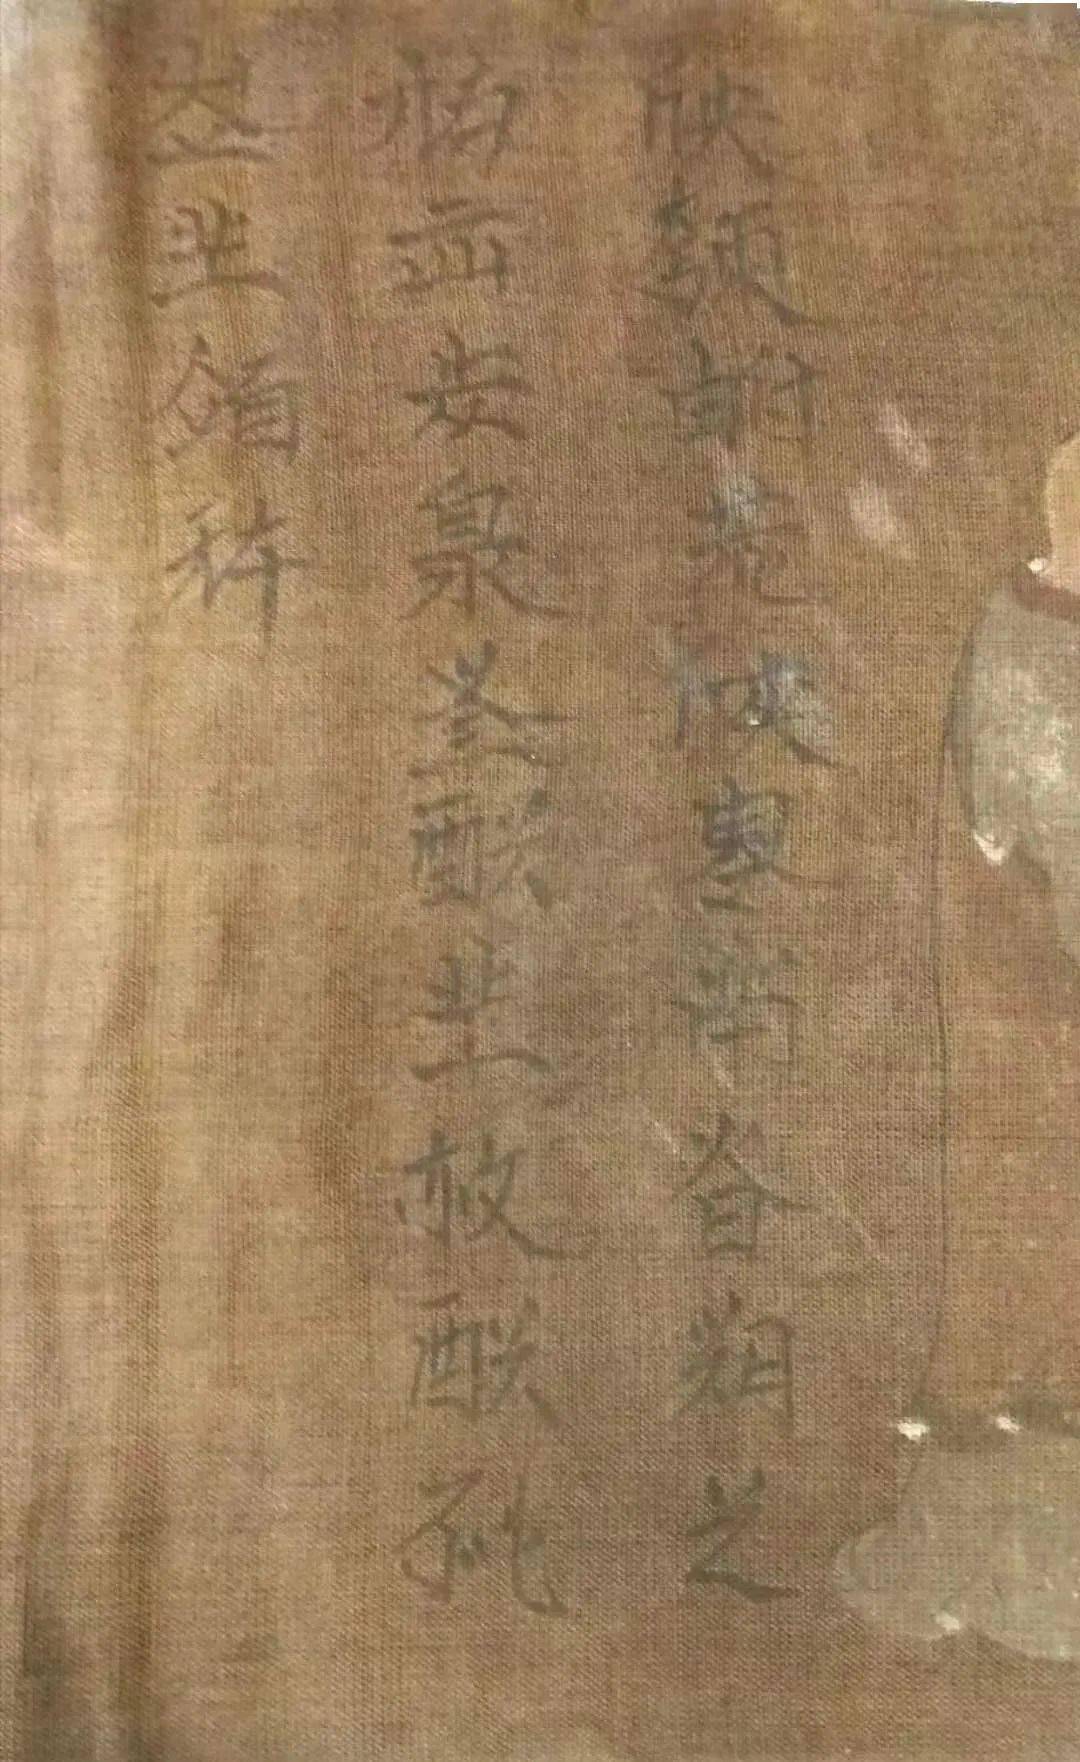 李义成先生向《中国书法全集》提供契丹文字图版